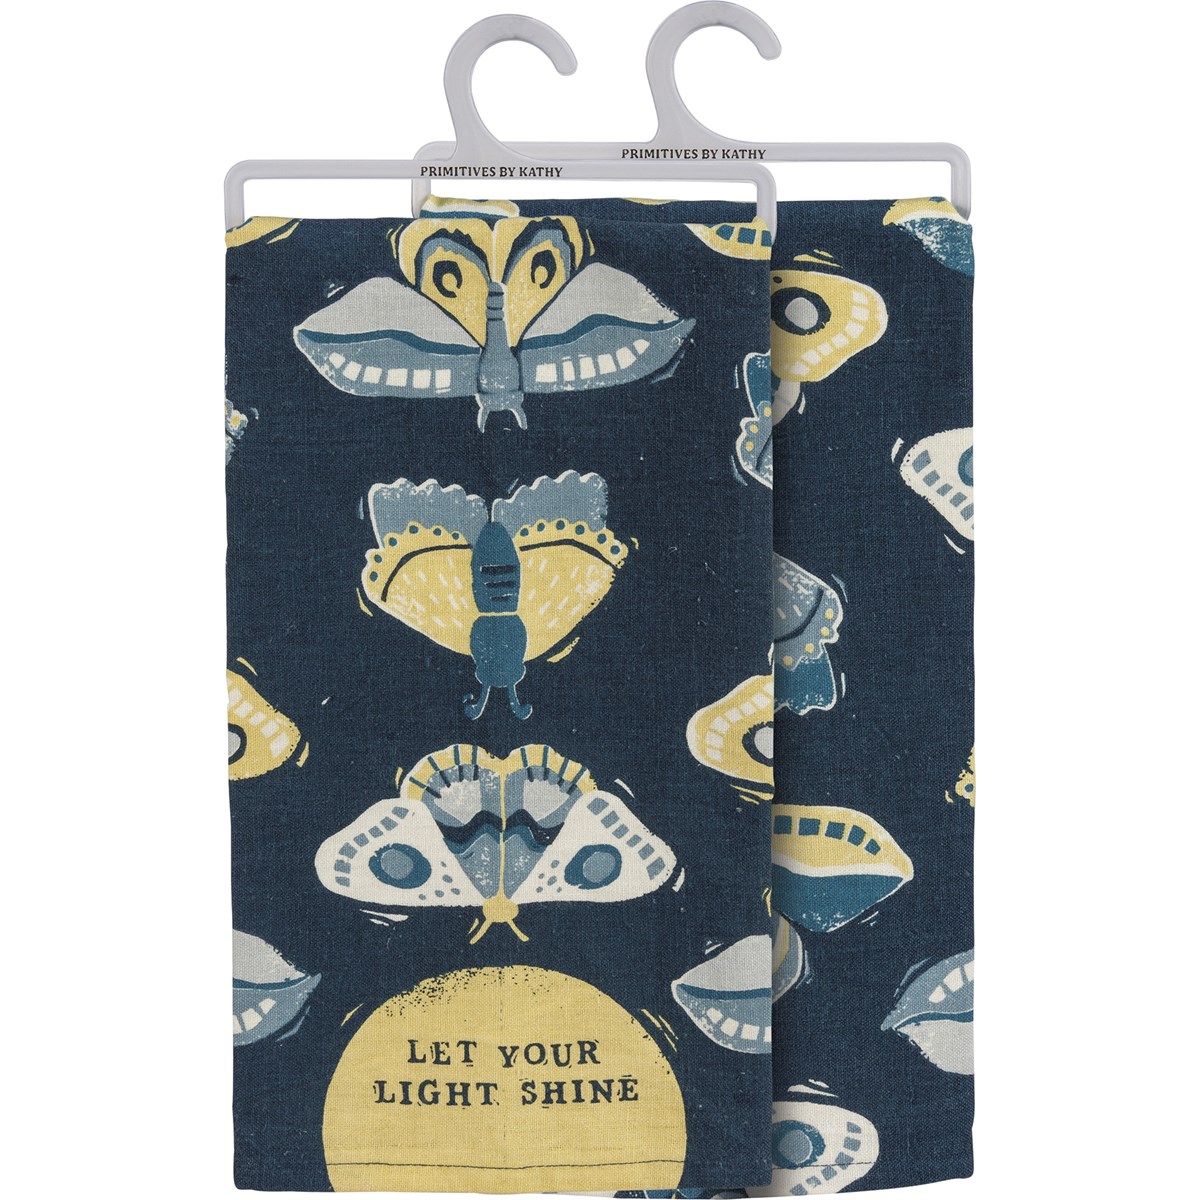 Let Your Light Shine Kitchen Towel - Cotton, Linen